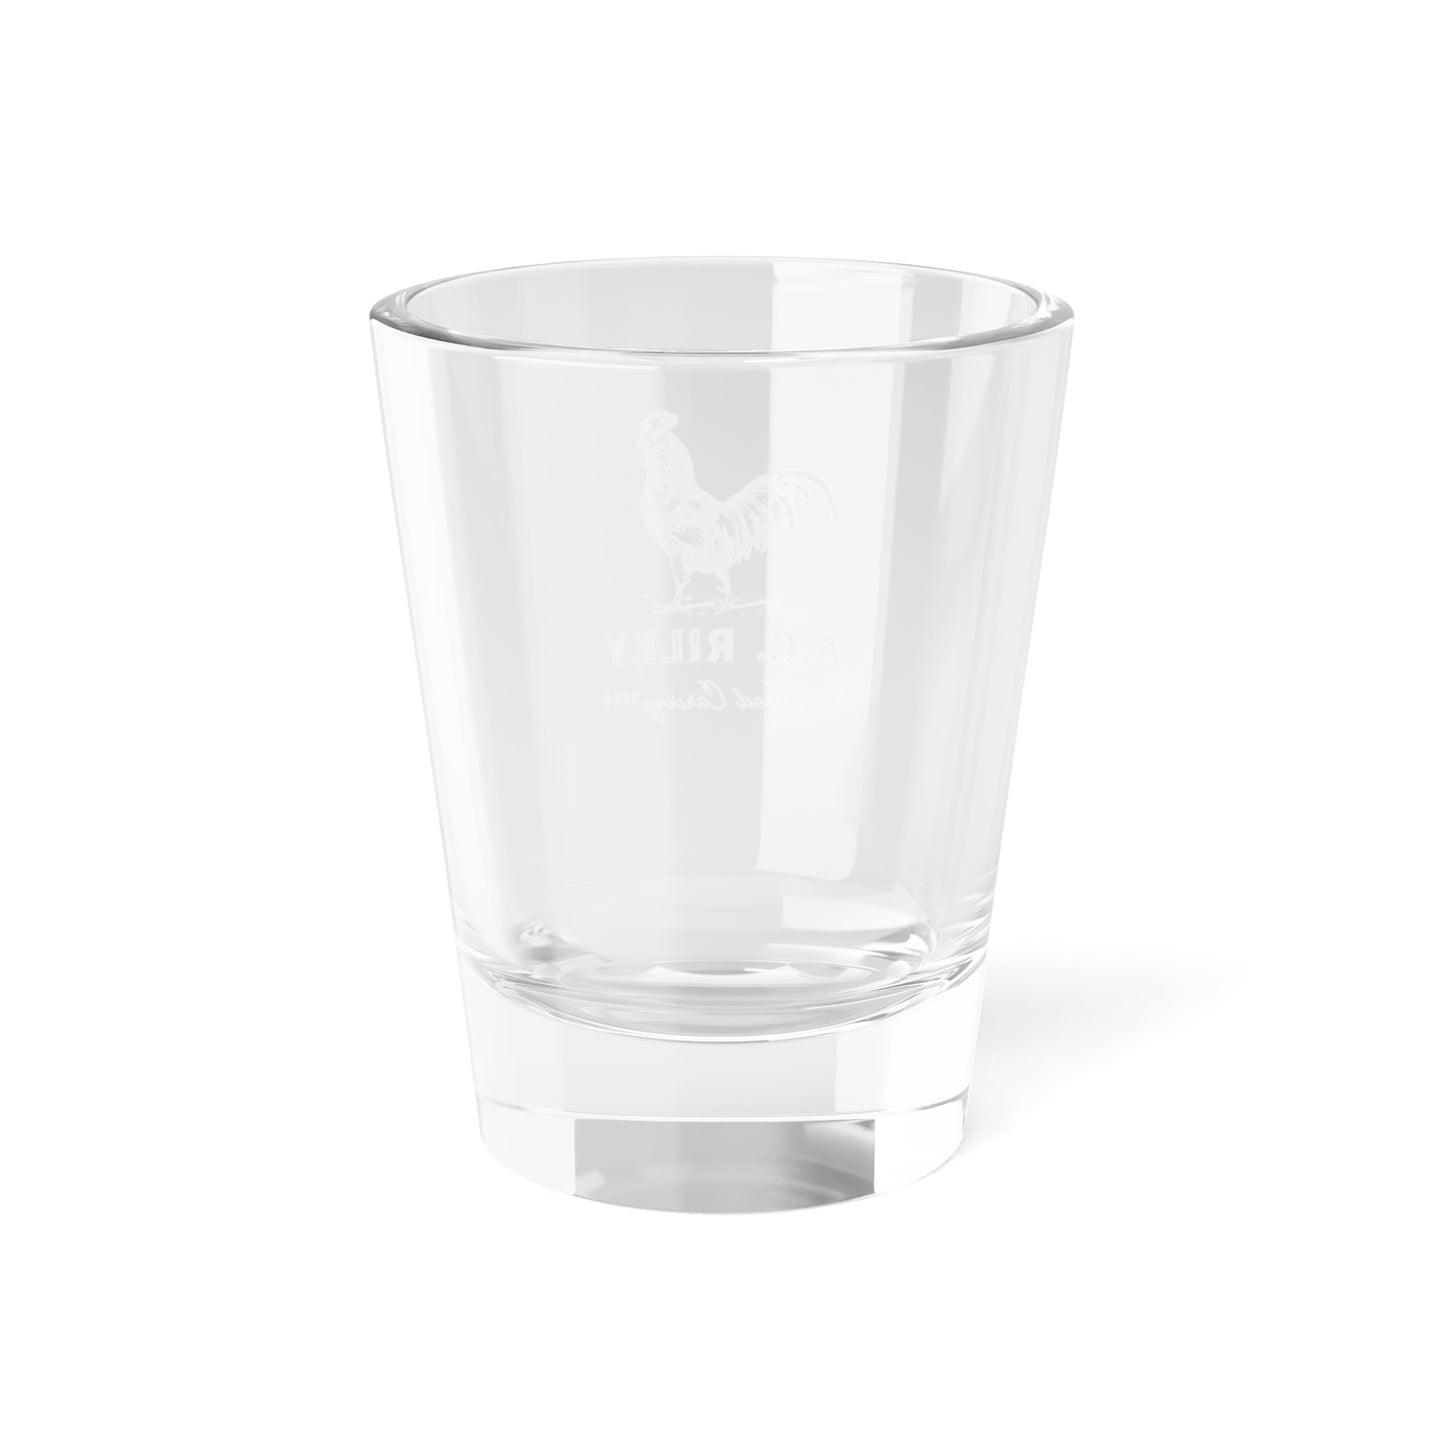 ACRWC Shot Glass, 1.5oz